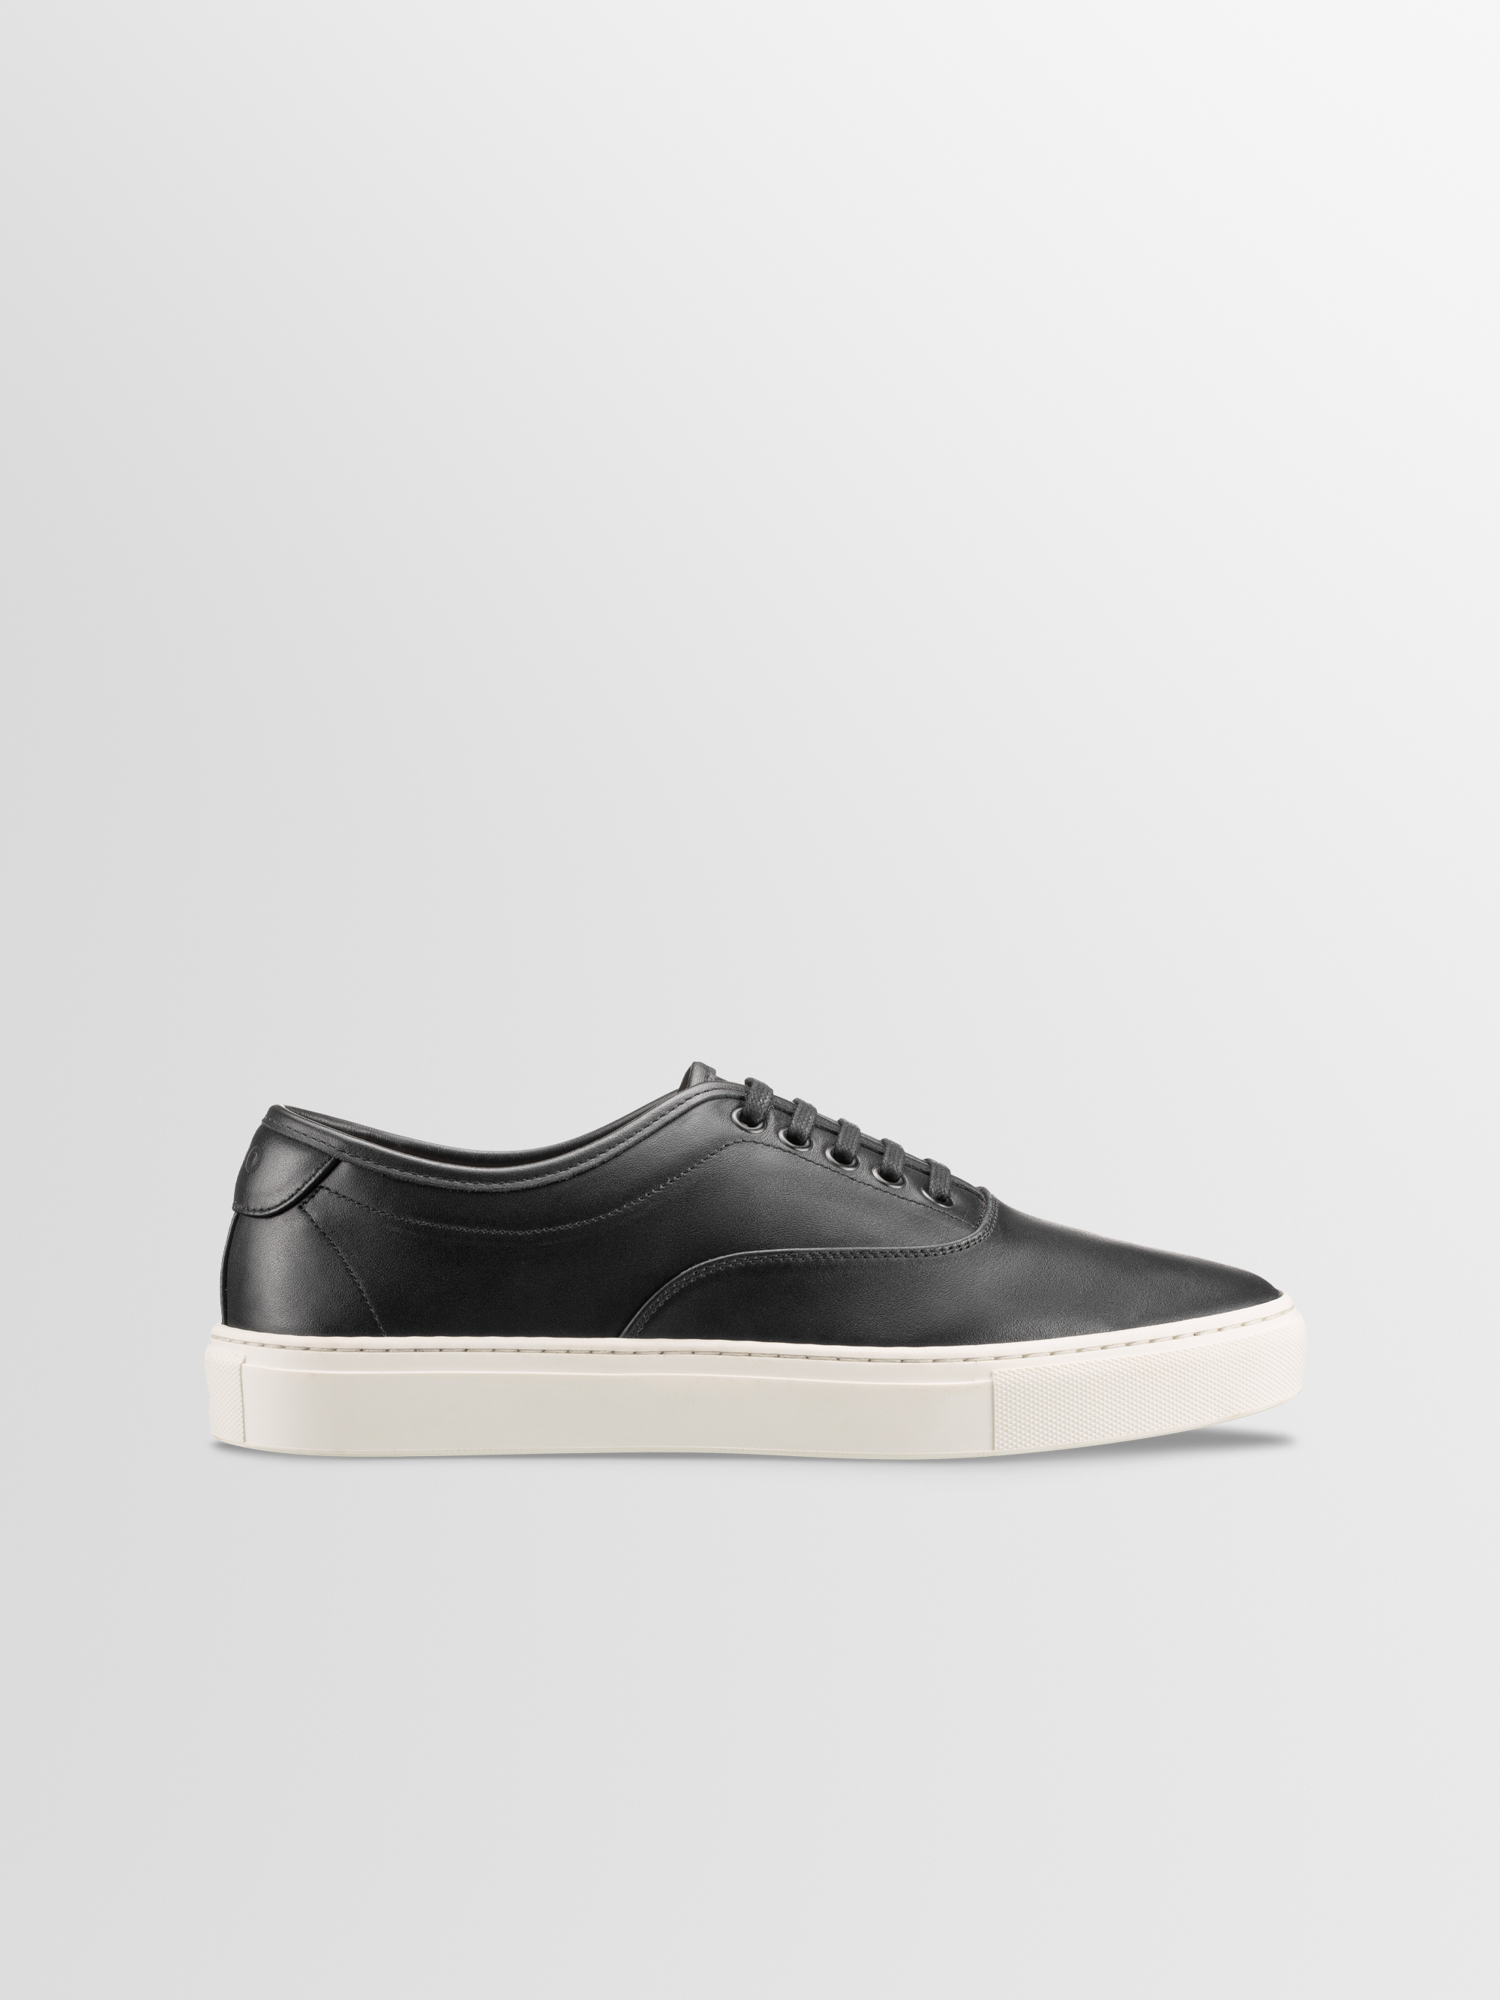 Men's Black Leather Low-top Sneaker | Portofino in Carbon | Koio – KOIO